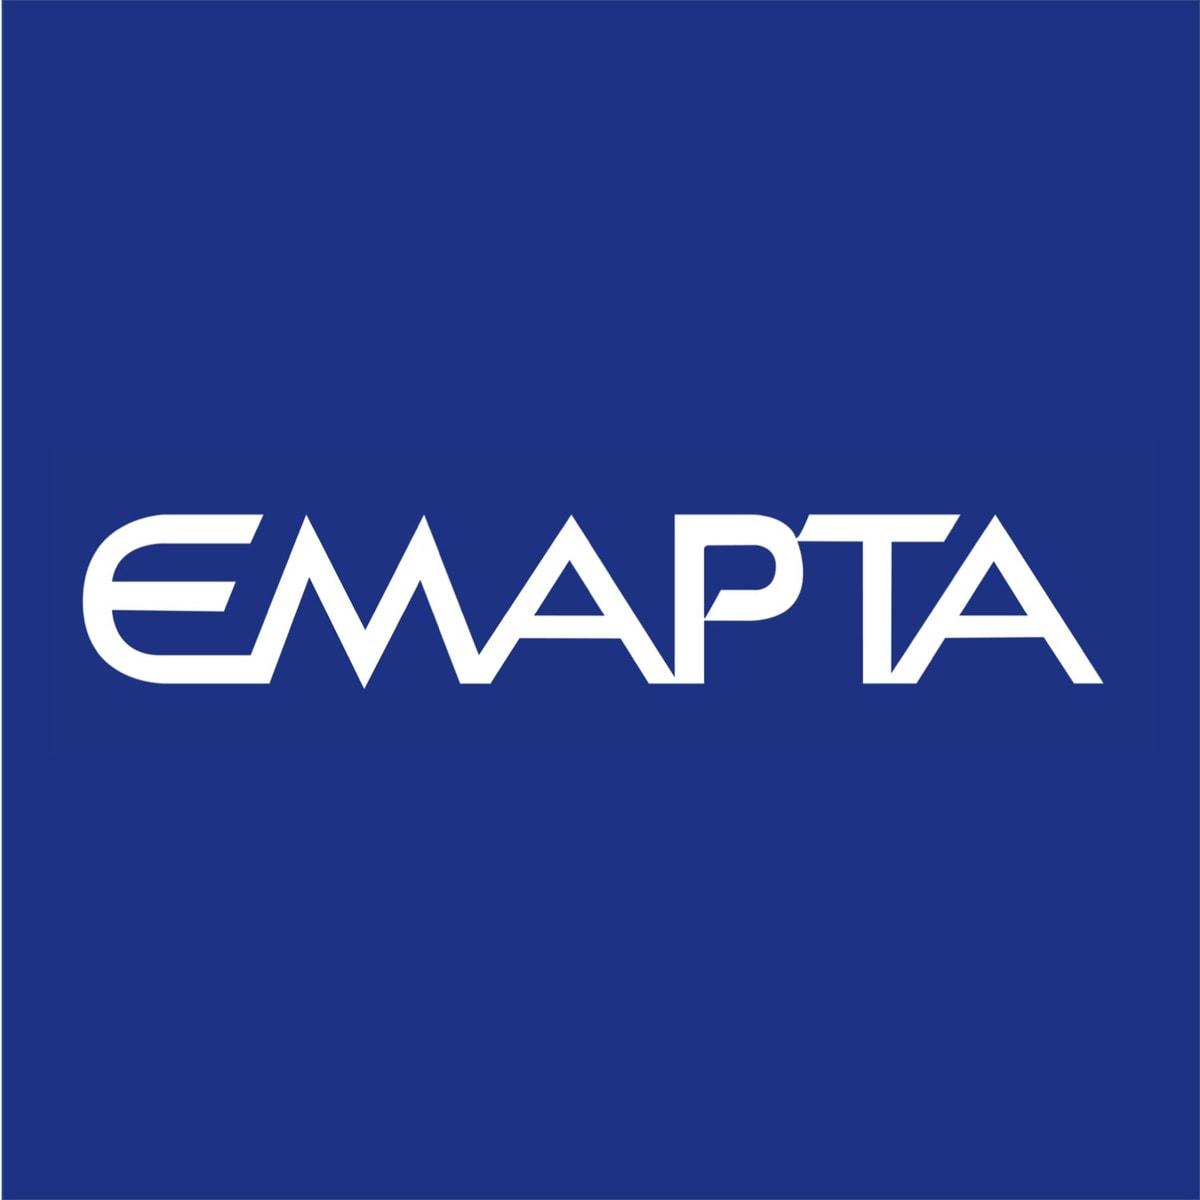 Emapta Philippines Inc.